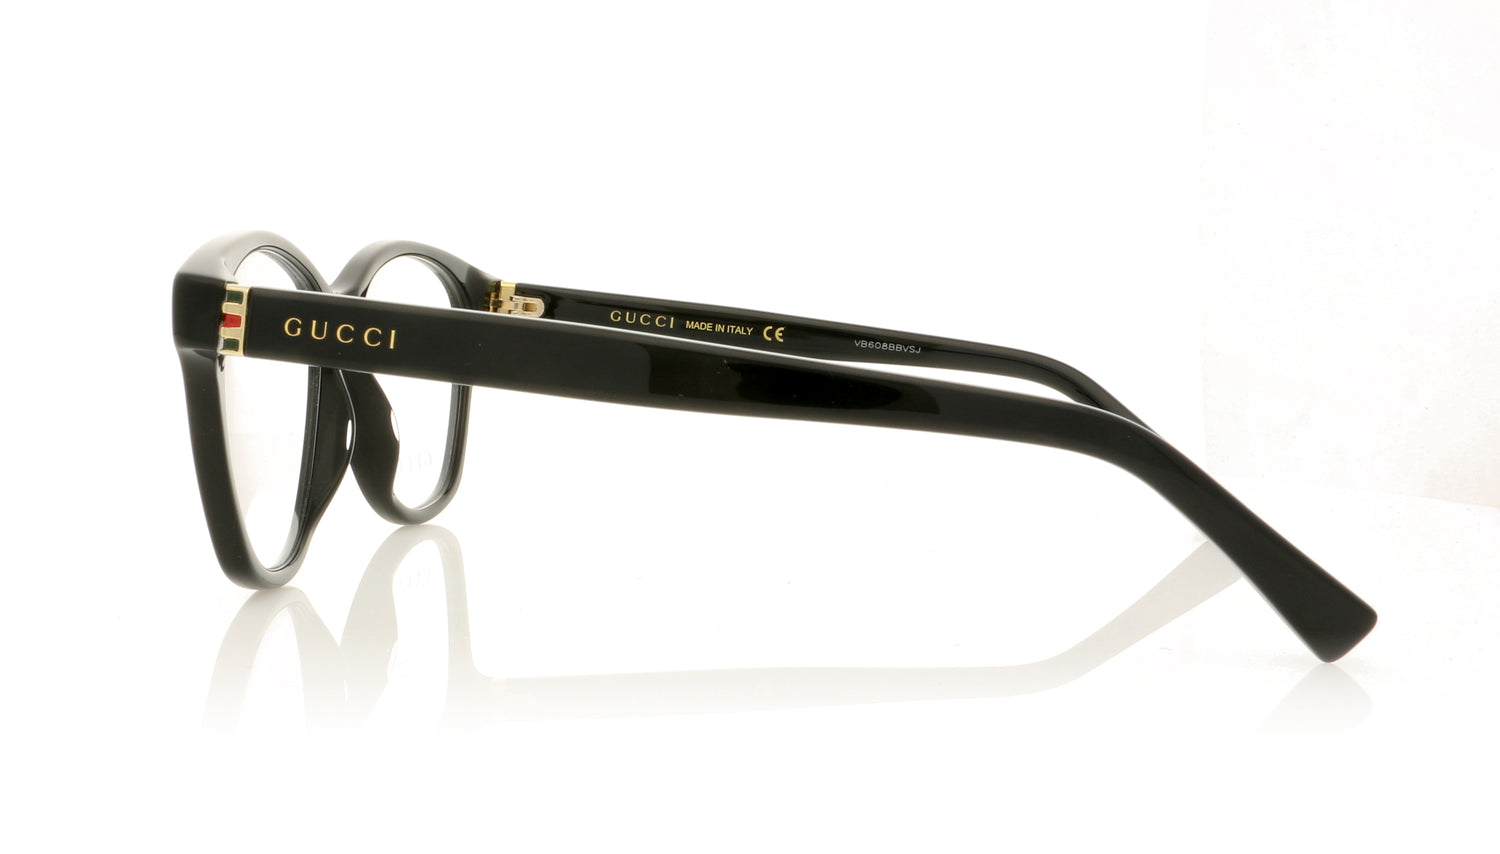 Gucci GG0456O 1 Black Gold Glasses - Side